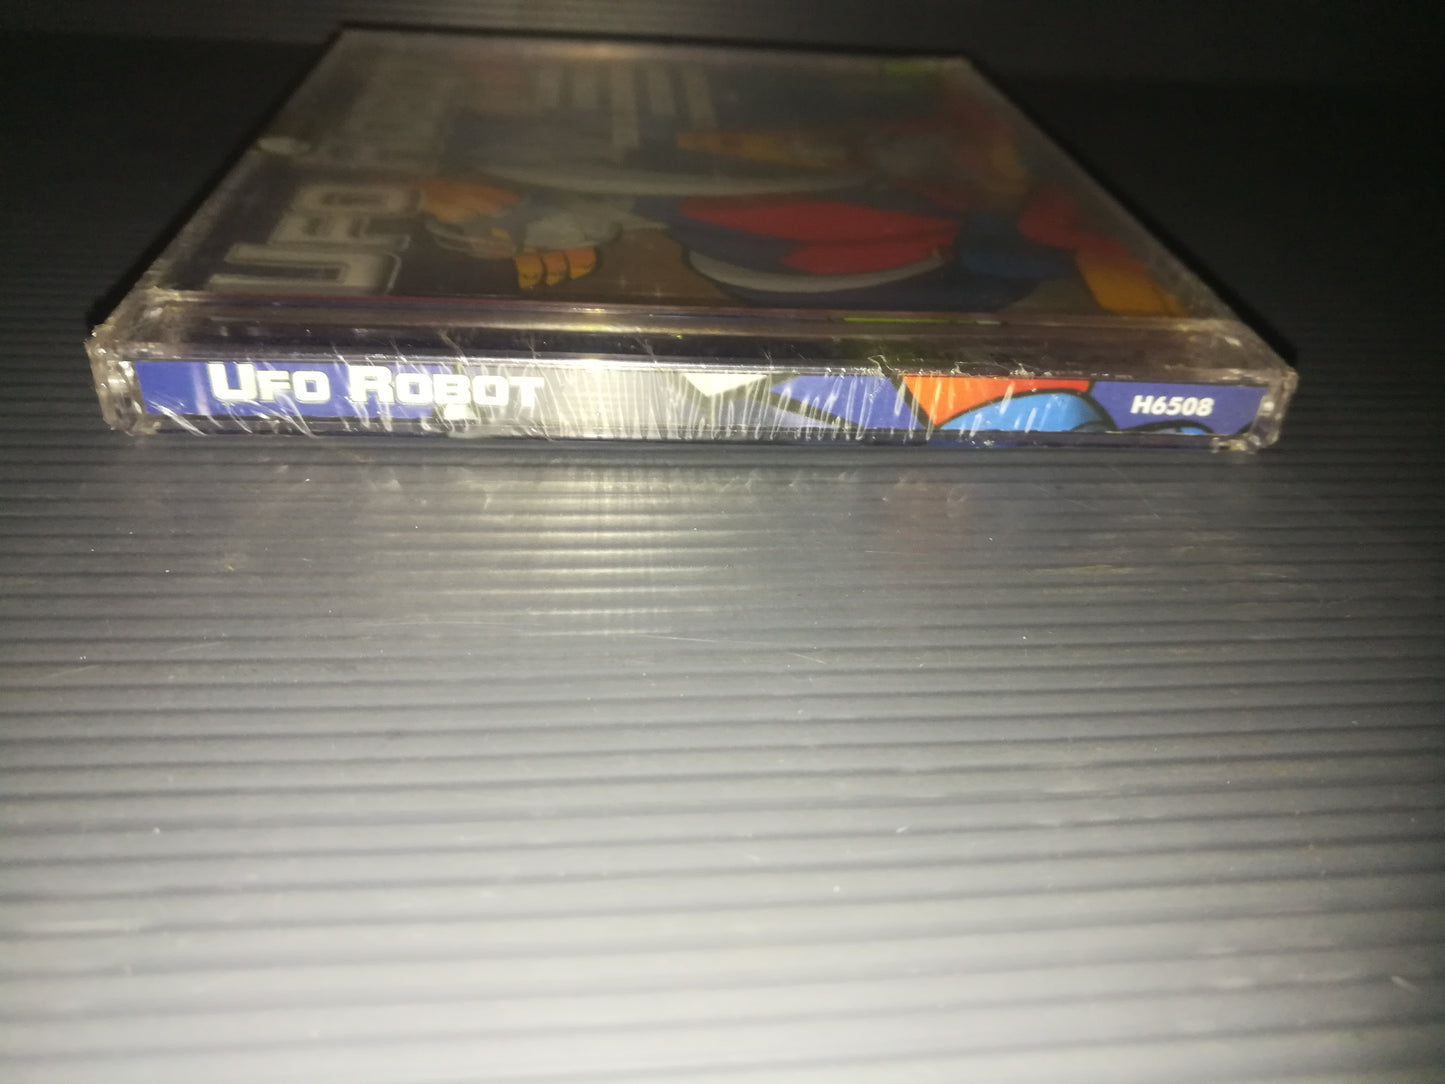 Ufo Robot" CD

Edito nel 2008 da Music Guardian Plus